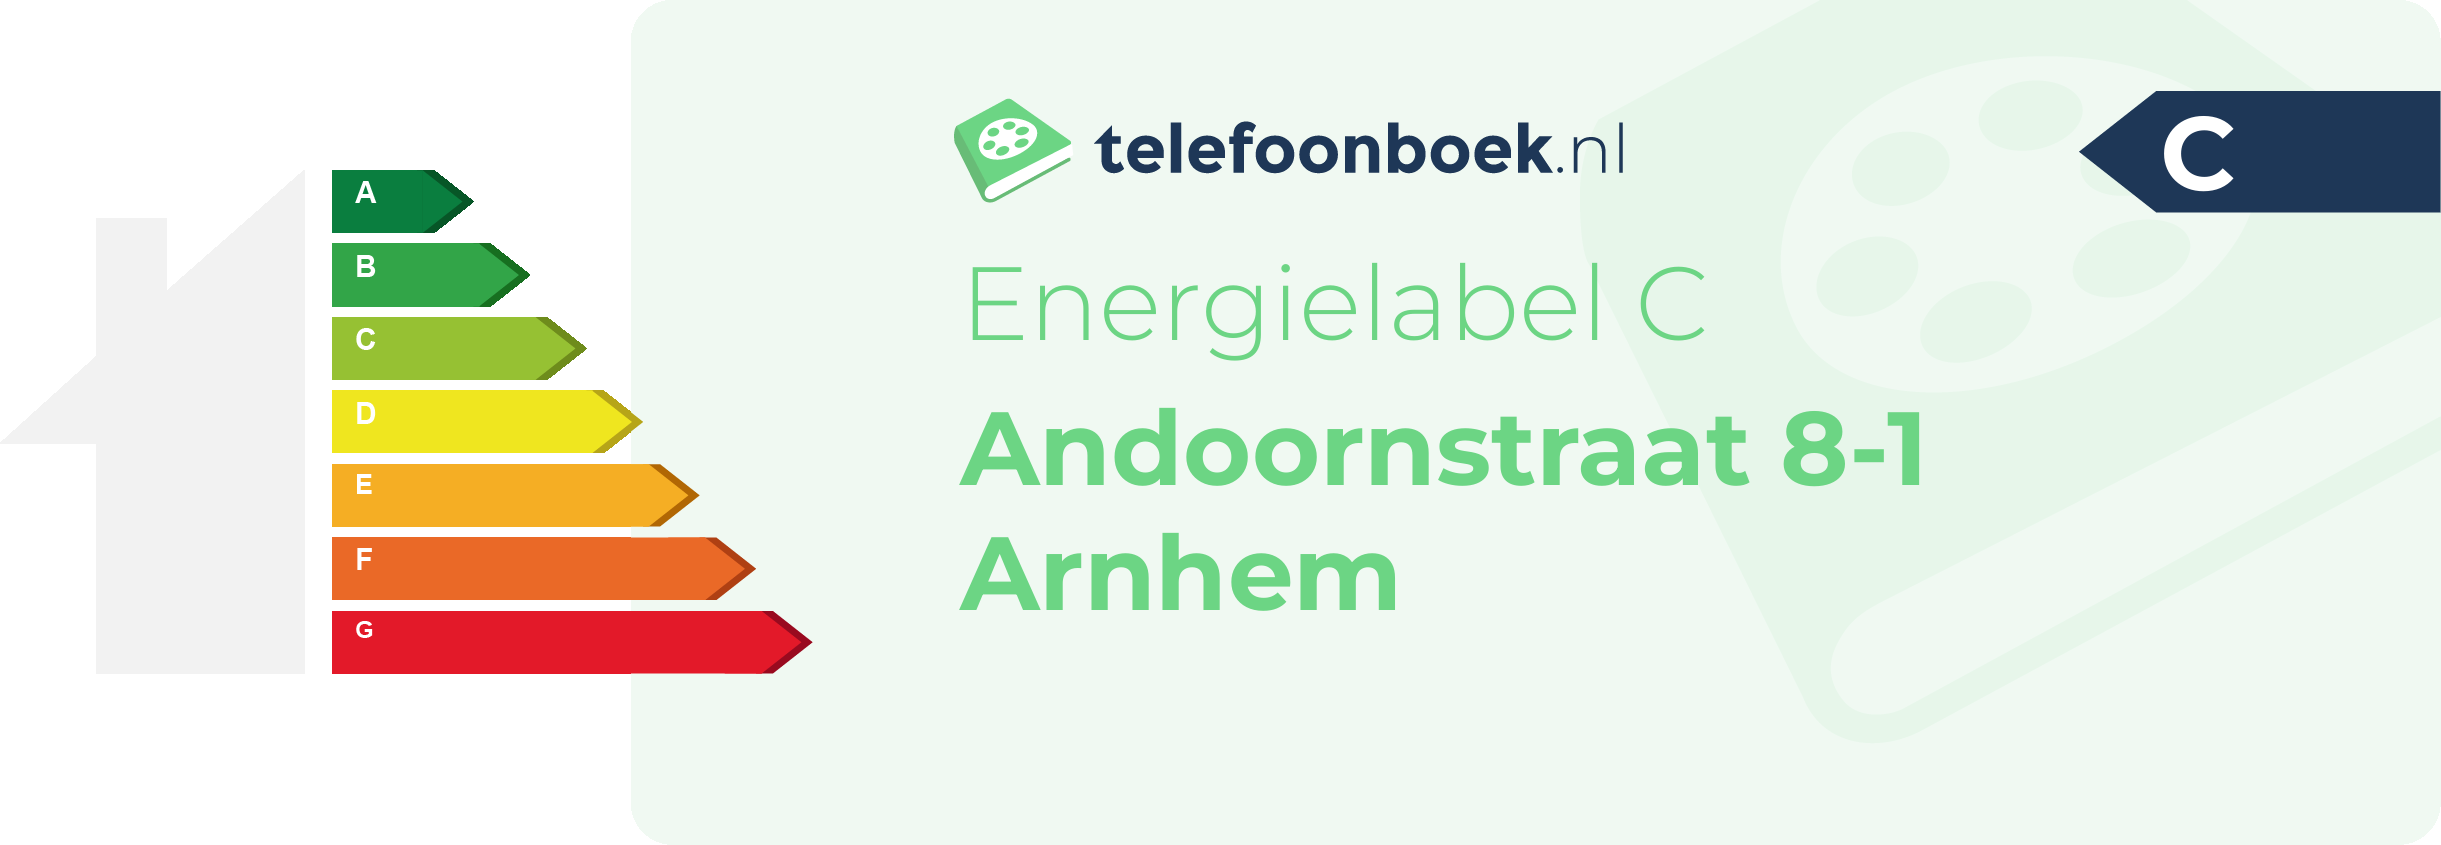 Energielabel Andoornstraat 8-1 Arnhem